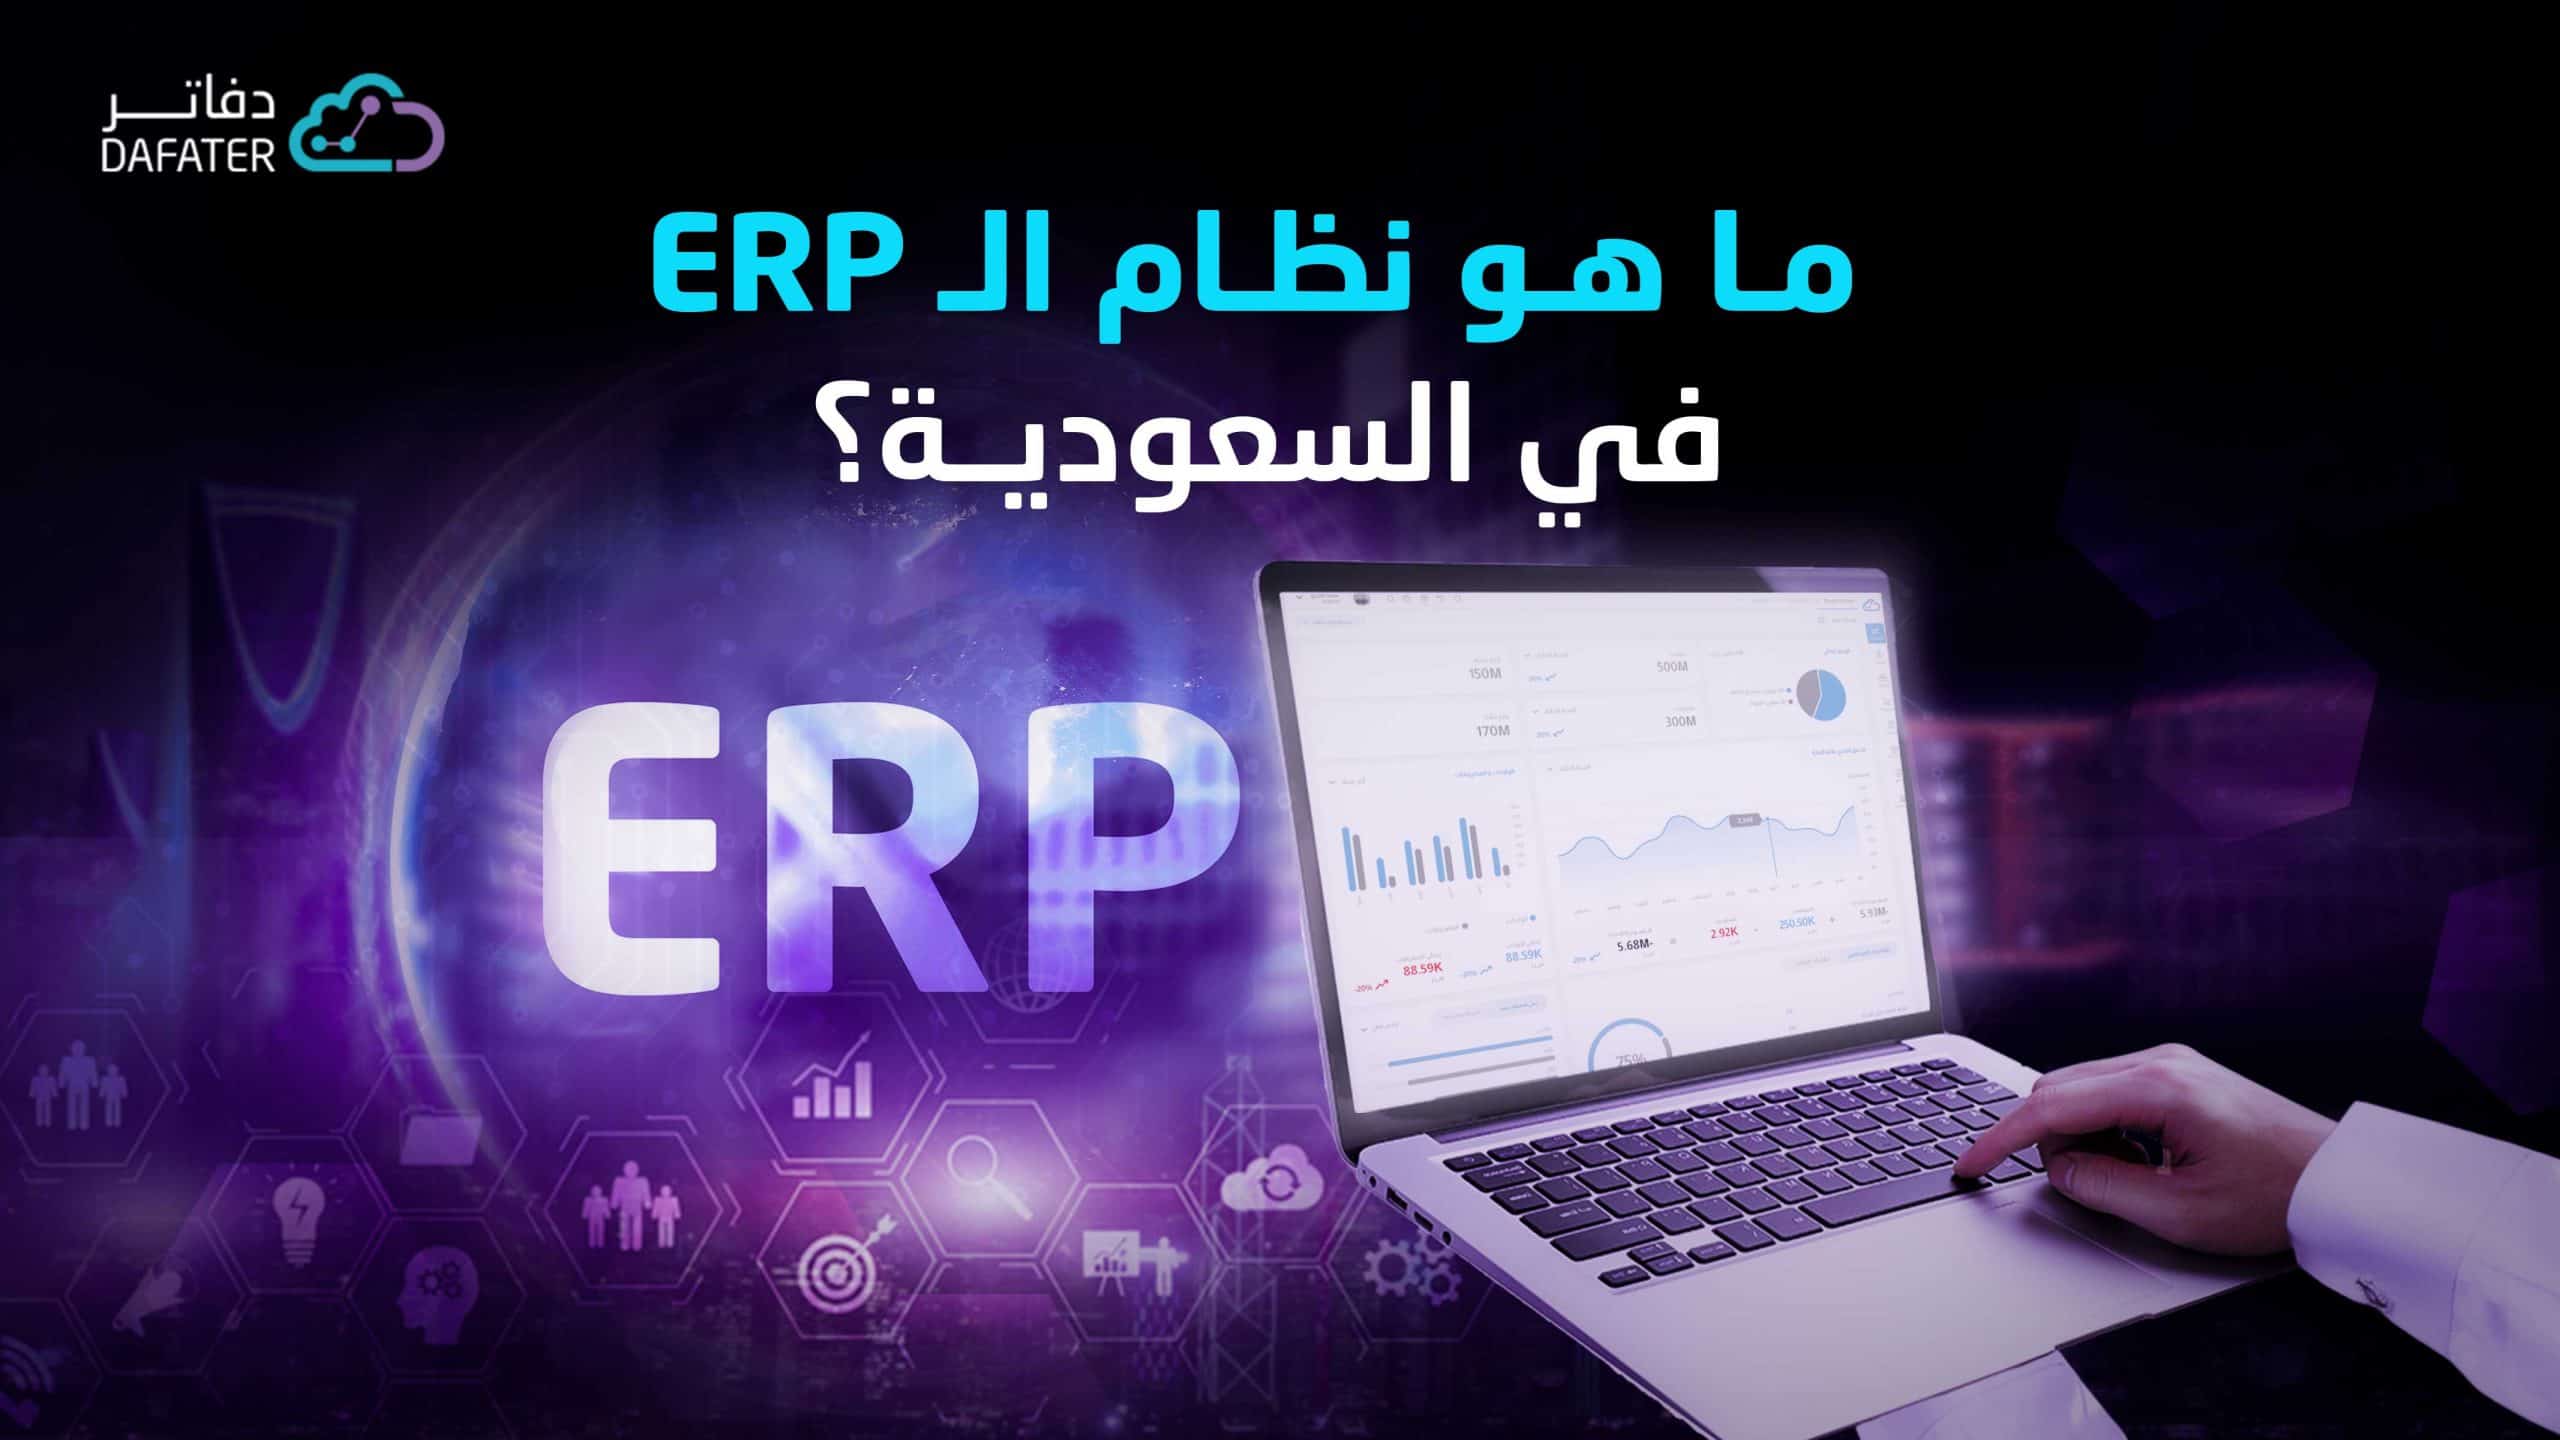 ما هي اهم انظمة ERP في المملكة العربية السعودية